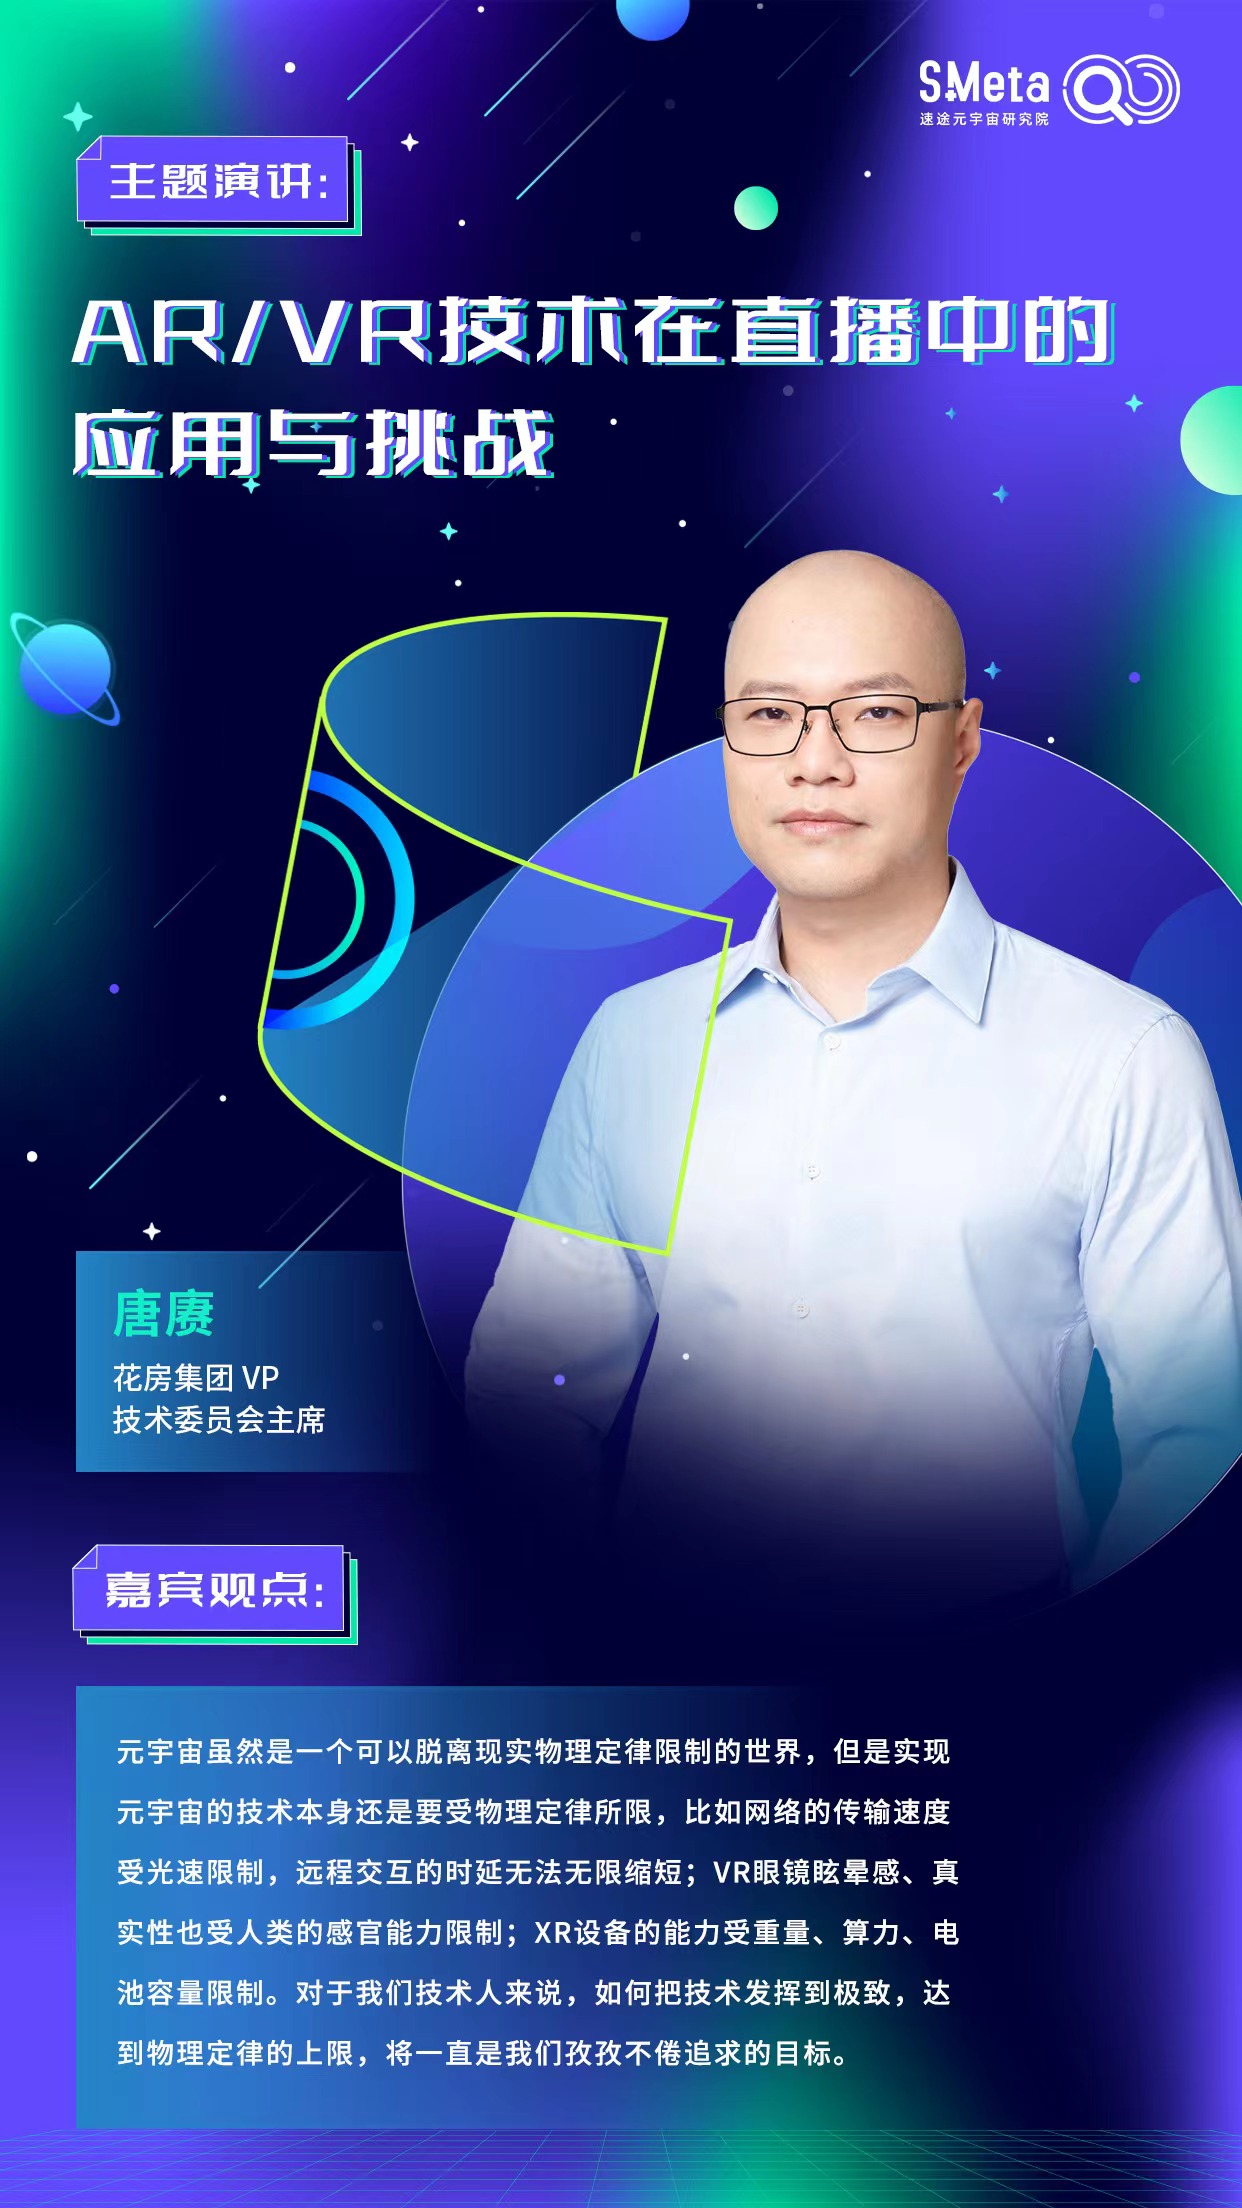 花房集团VP 技术委员会主席唐赓：AR和VR是元宇宙的入口